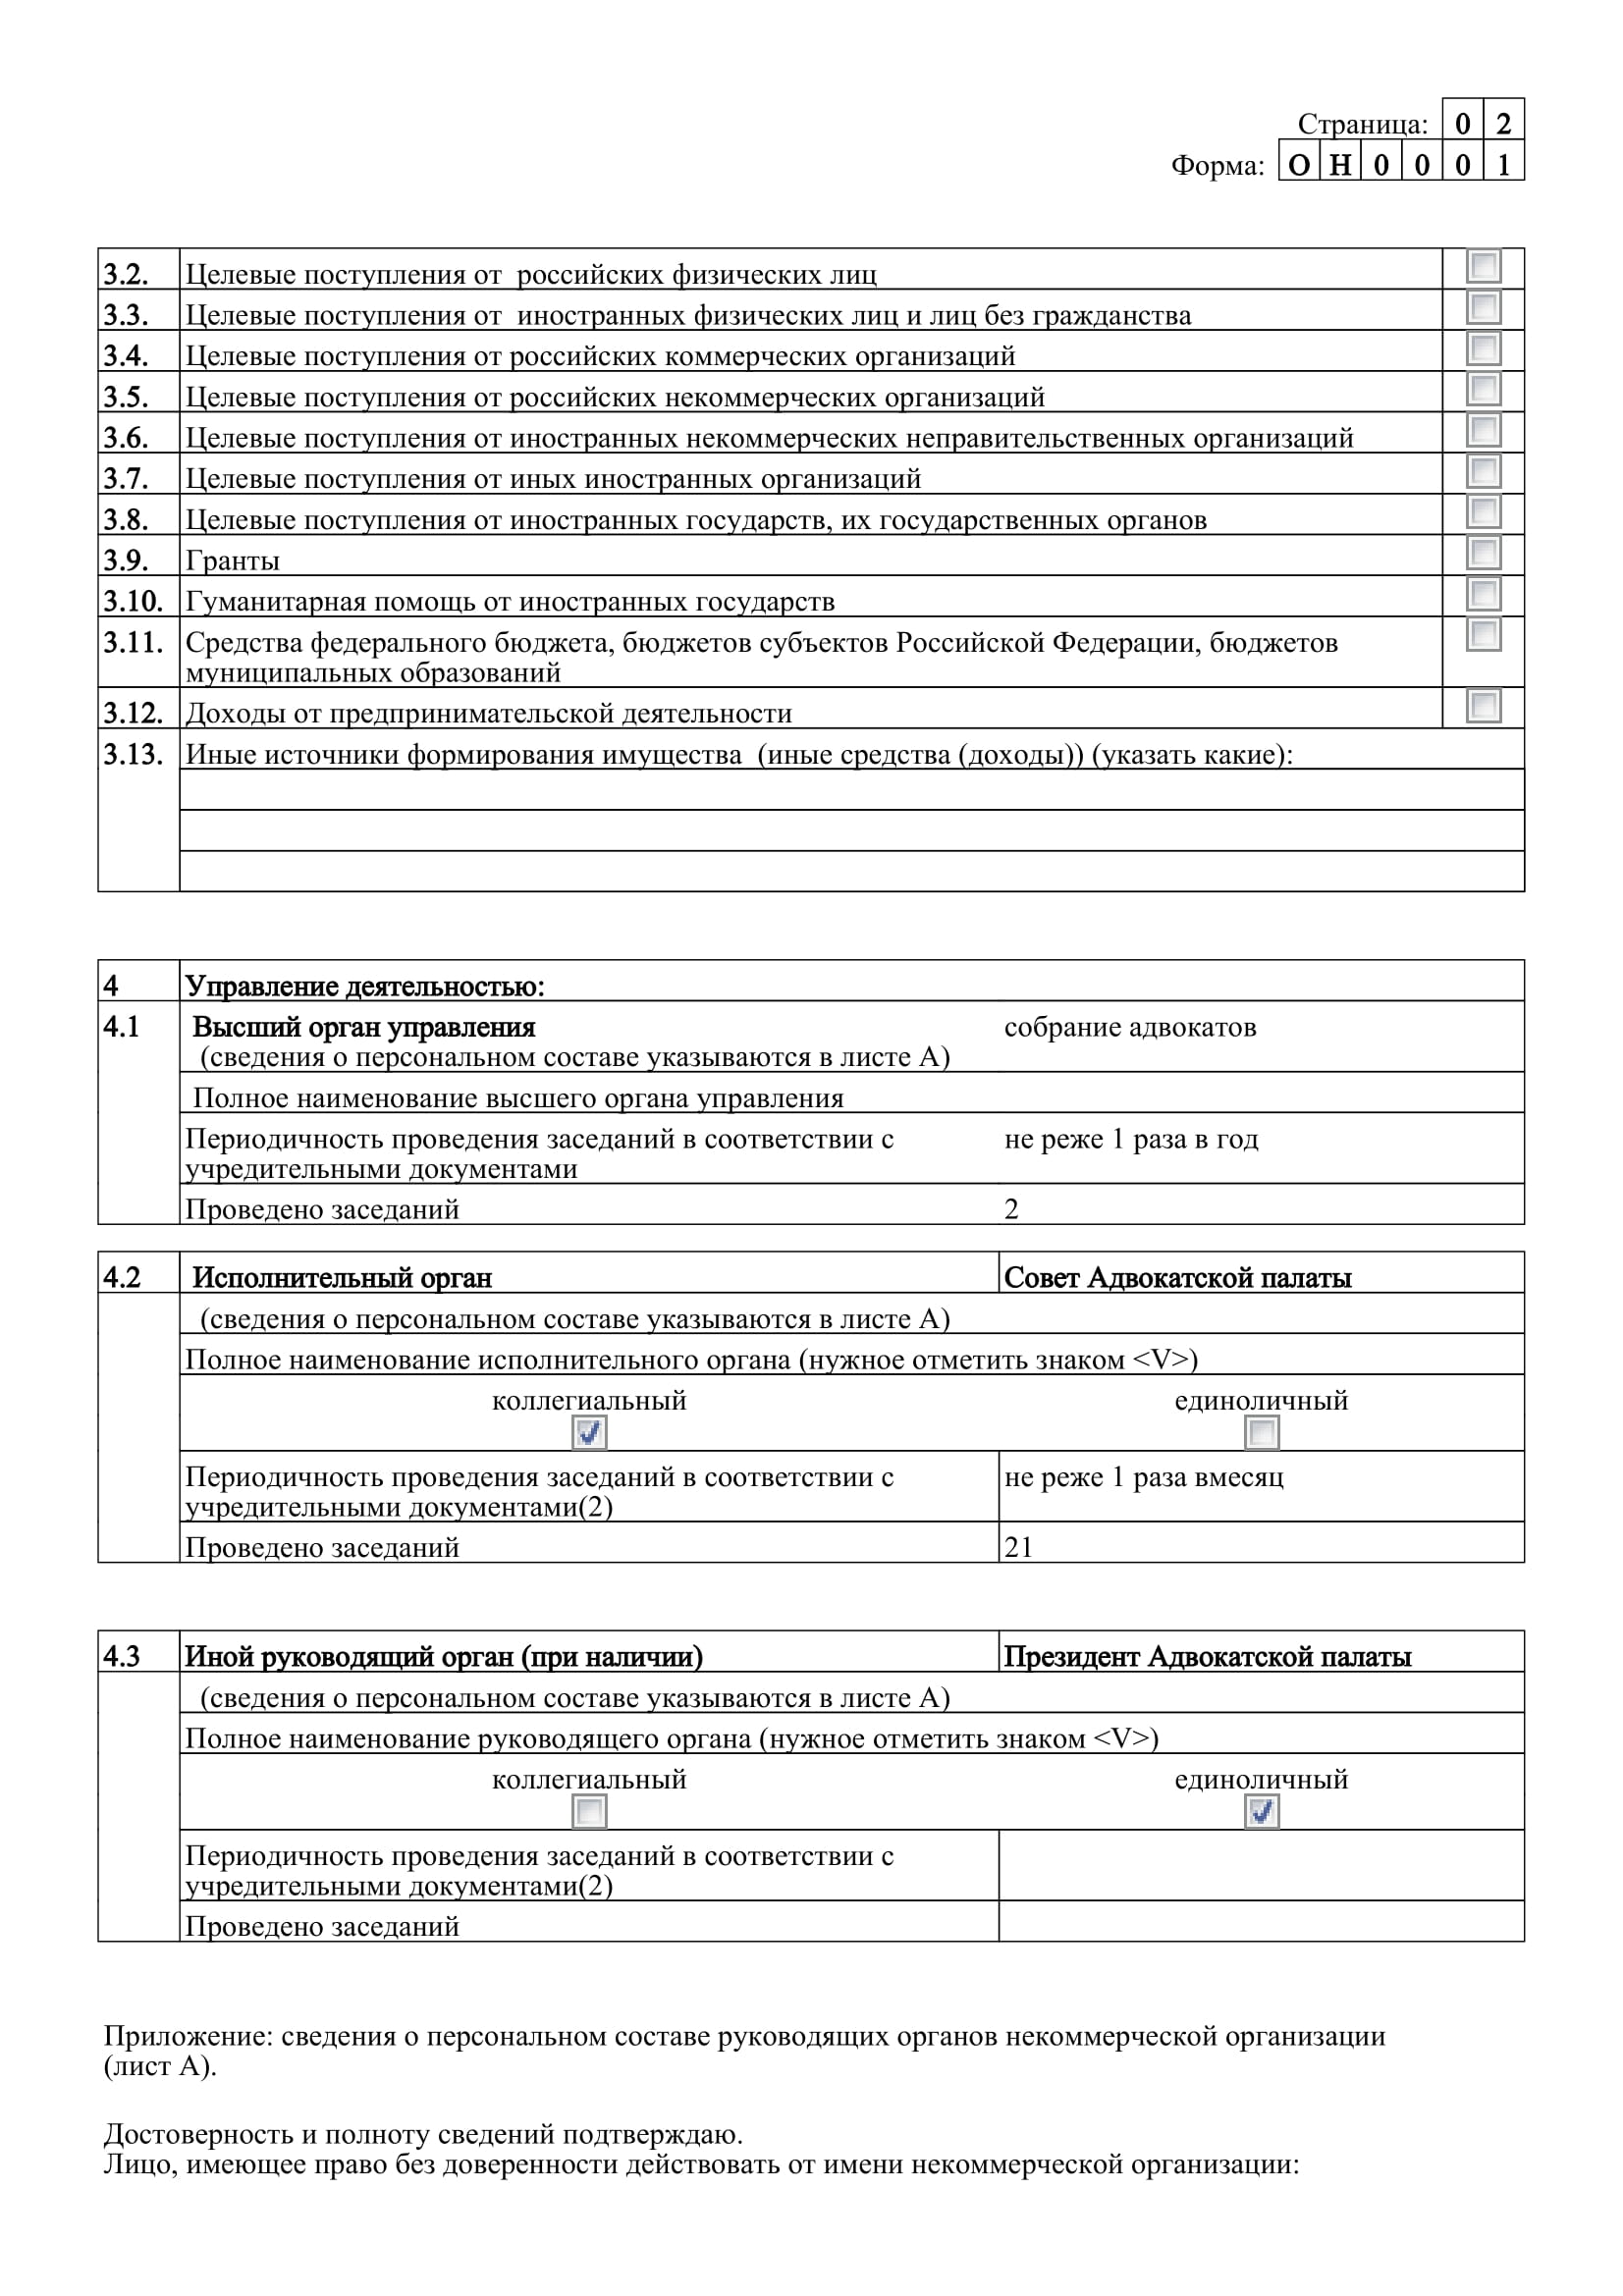 Отчеты Адвокатской палаты в Минюст за 2019 год